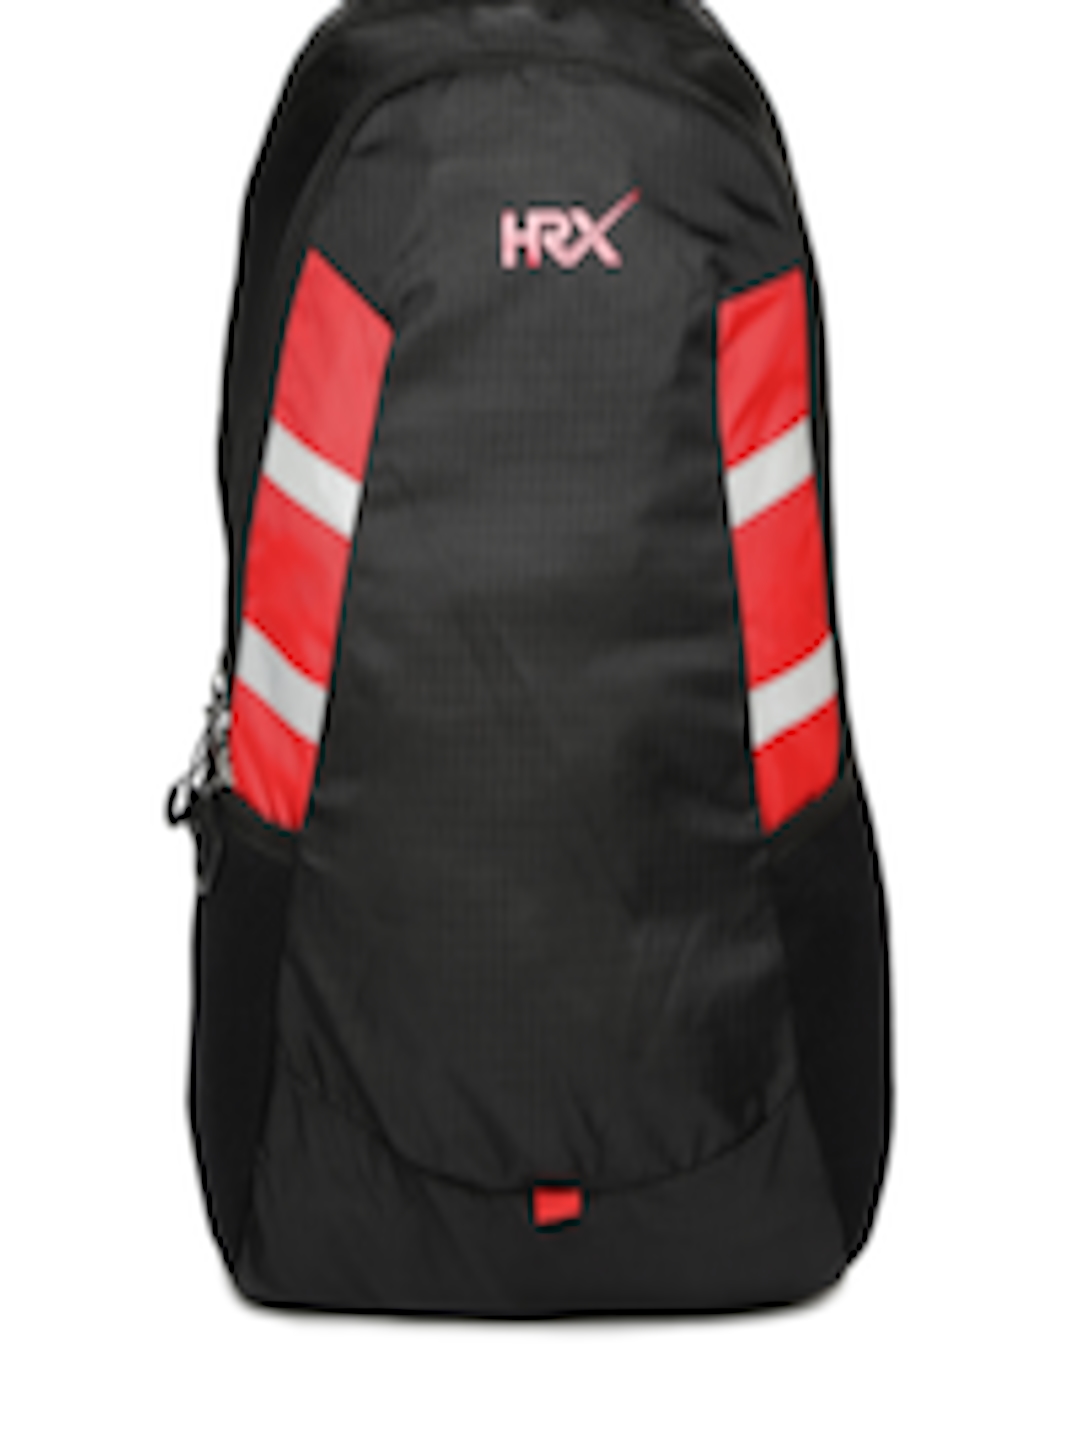 Buy HRX Unisex Black & Red Laptop Backpack - Backpacks for Unisex ...